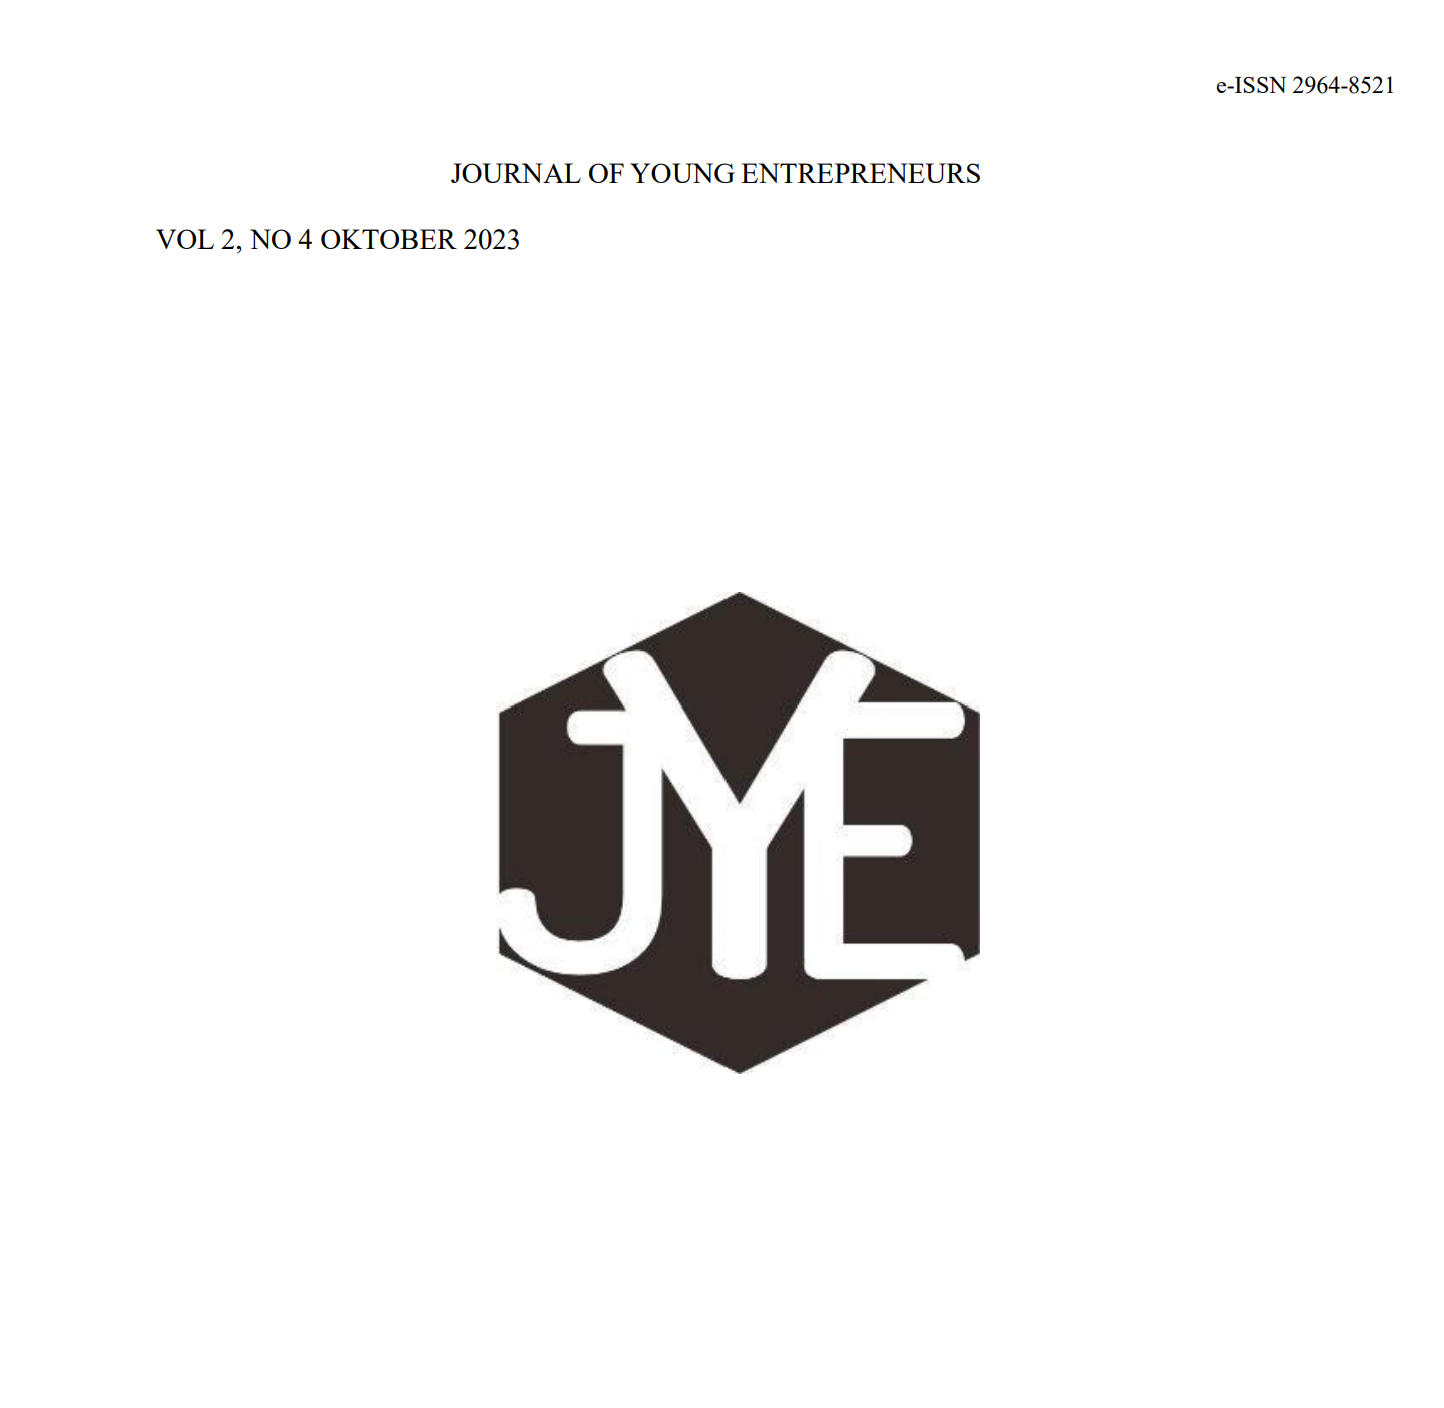 					Lihat Vol 2 No 4 (2023): Vol 2 No 4 (2023): Journal of Young Entrepreneurs Vol 2 No 4 Oktober 2023
				